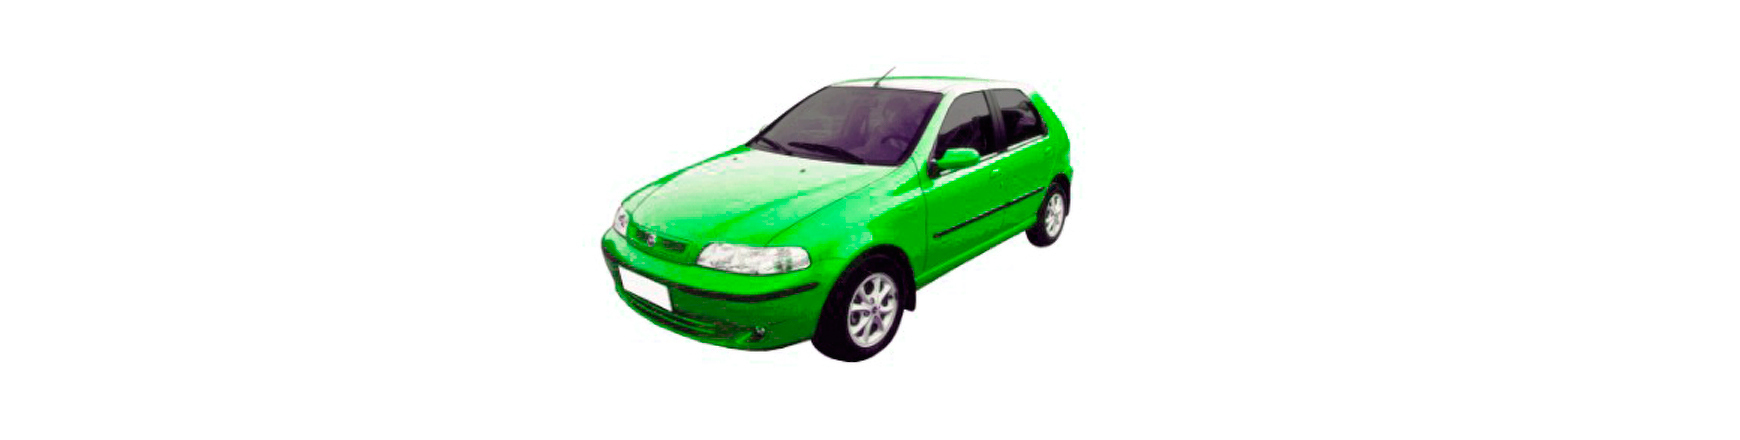 Recambios de Fiat Palio de 2001, 2002, 2003, 2004 y 2005